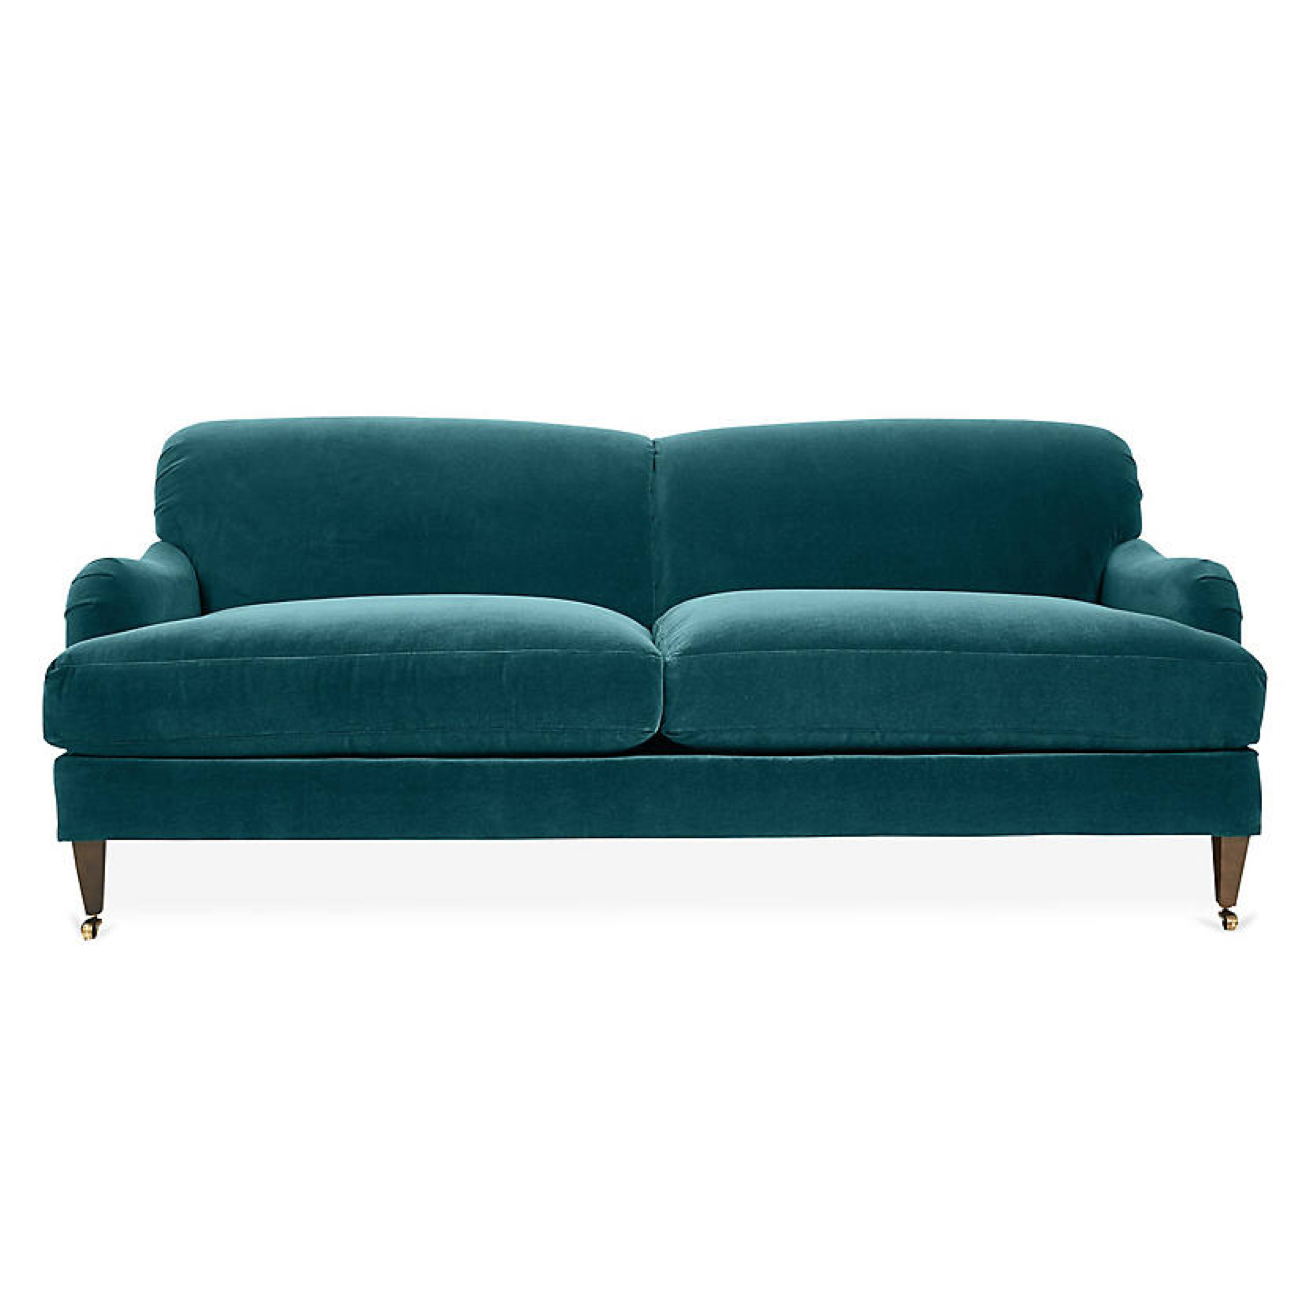 hayes-sofa-peacock-blue-green-velvet-one-kings-lane-furniture